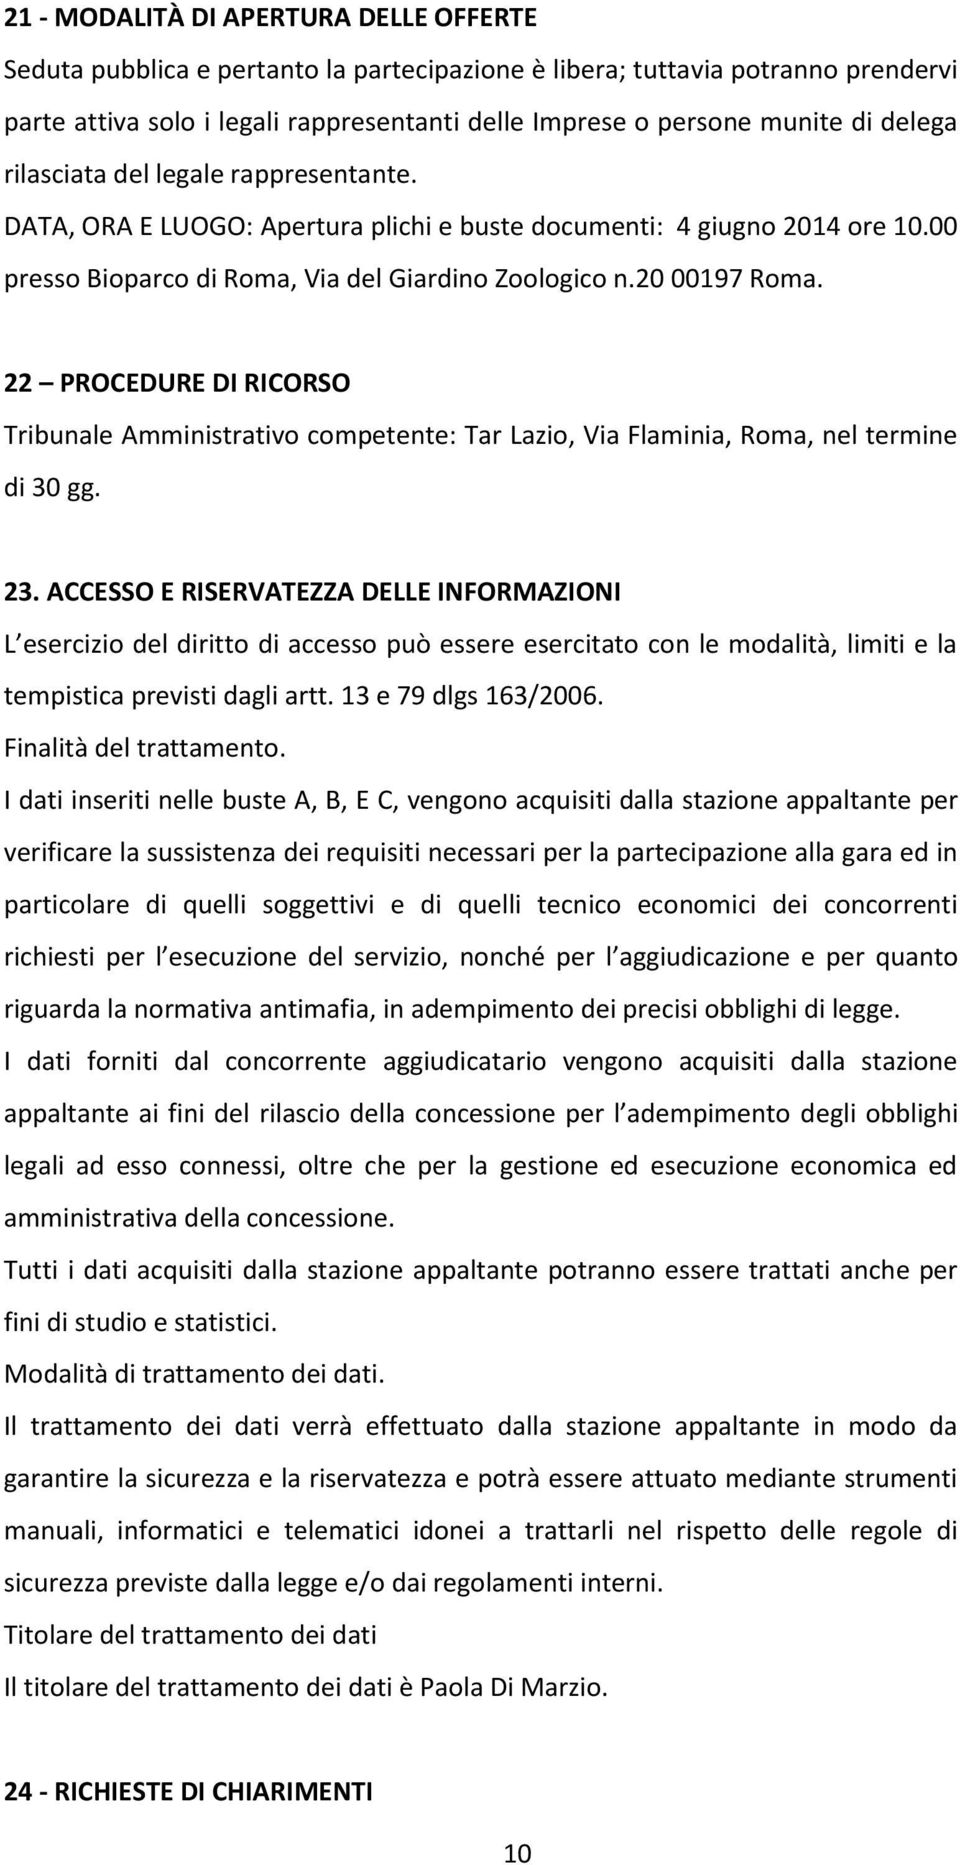 22 PROCEDURE DI RICORSO Tribunale Amministrativo competente: Tar Lazio, Via Flaminia, Roma, nel termine di 30 gg. 23.